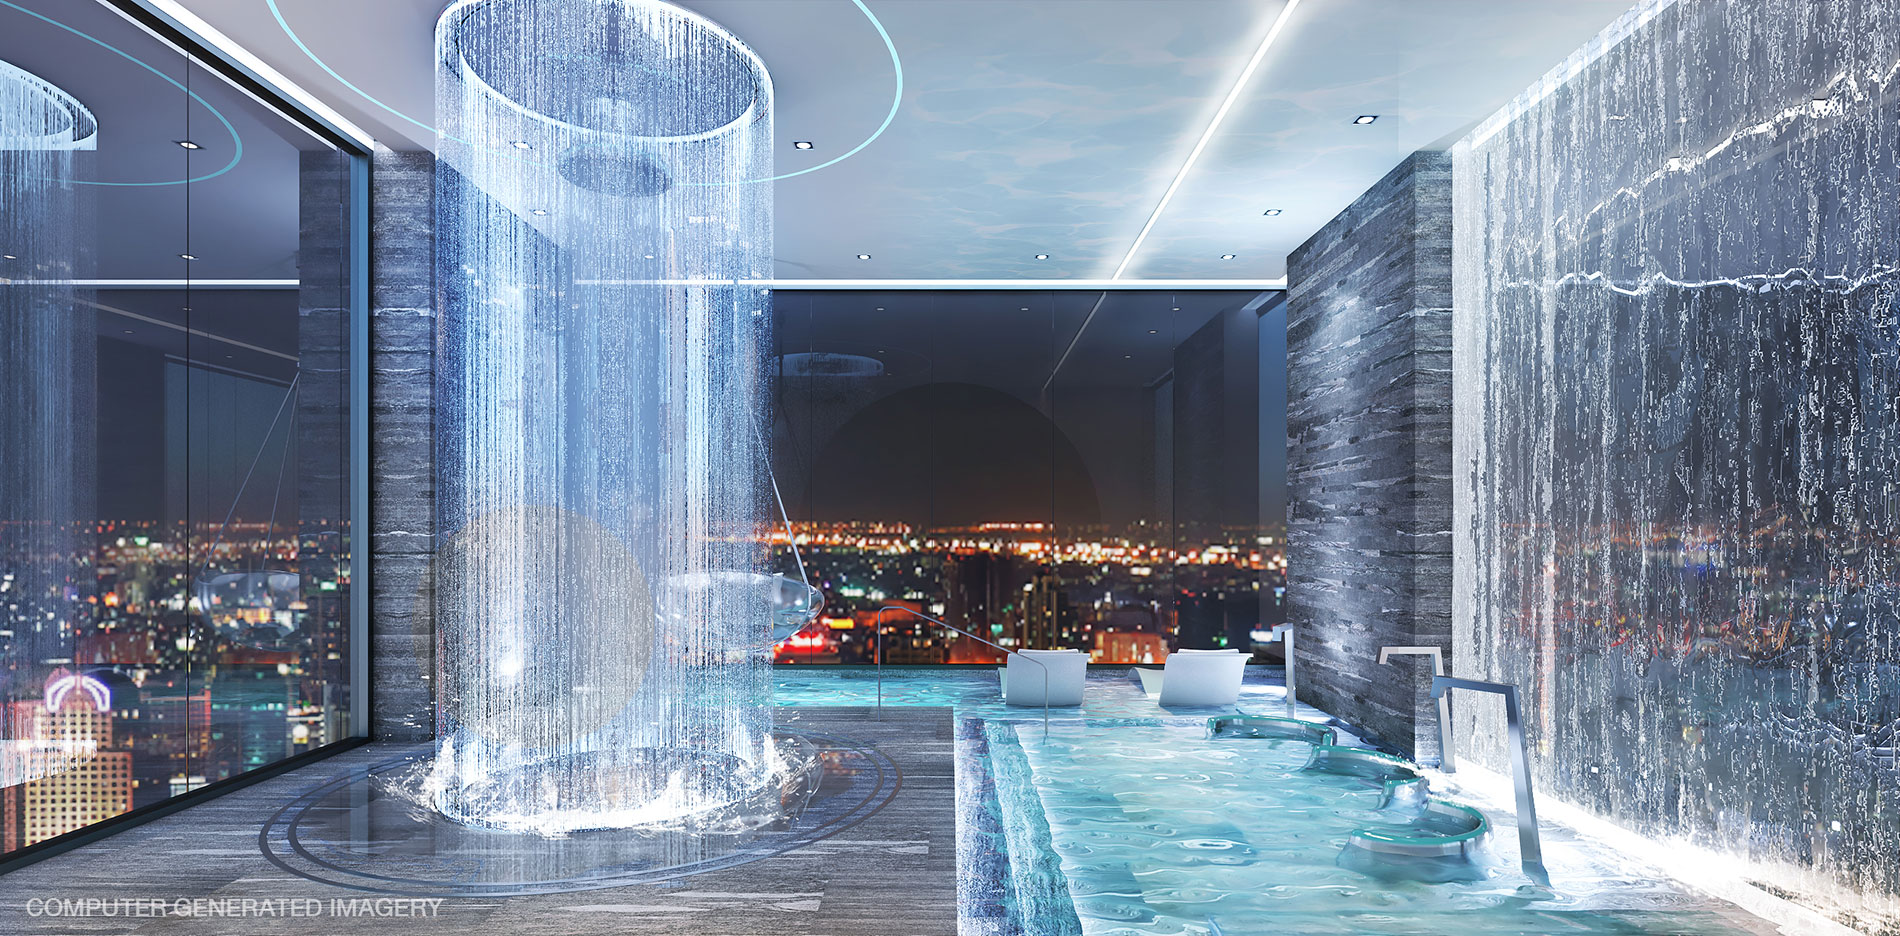 Building C: Aqua Lounge ให้คุณผ่อนคลาย ท่ามกลางสายน้ำ ที่ปรับอุณหภูมิให้เหมาะกับร่างกายของคุณ